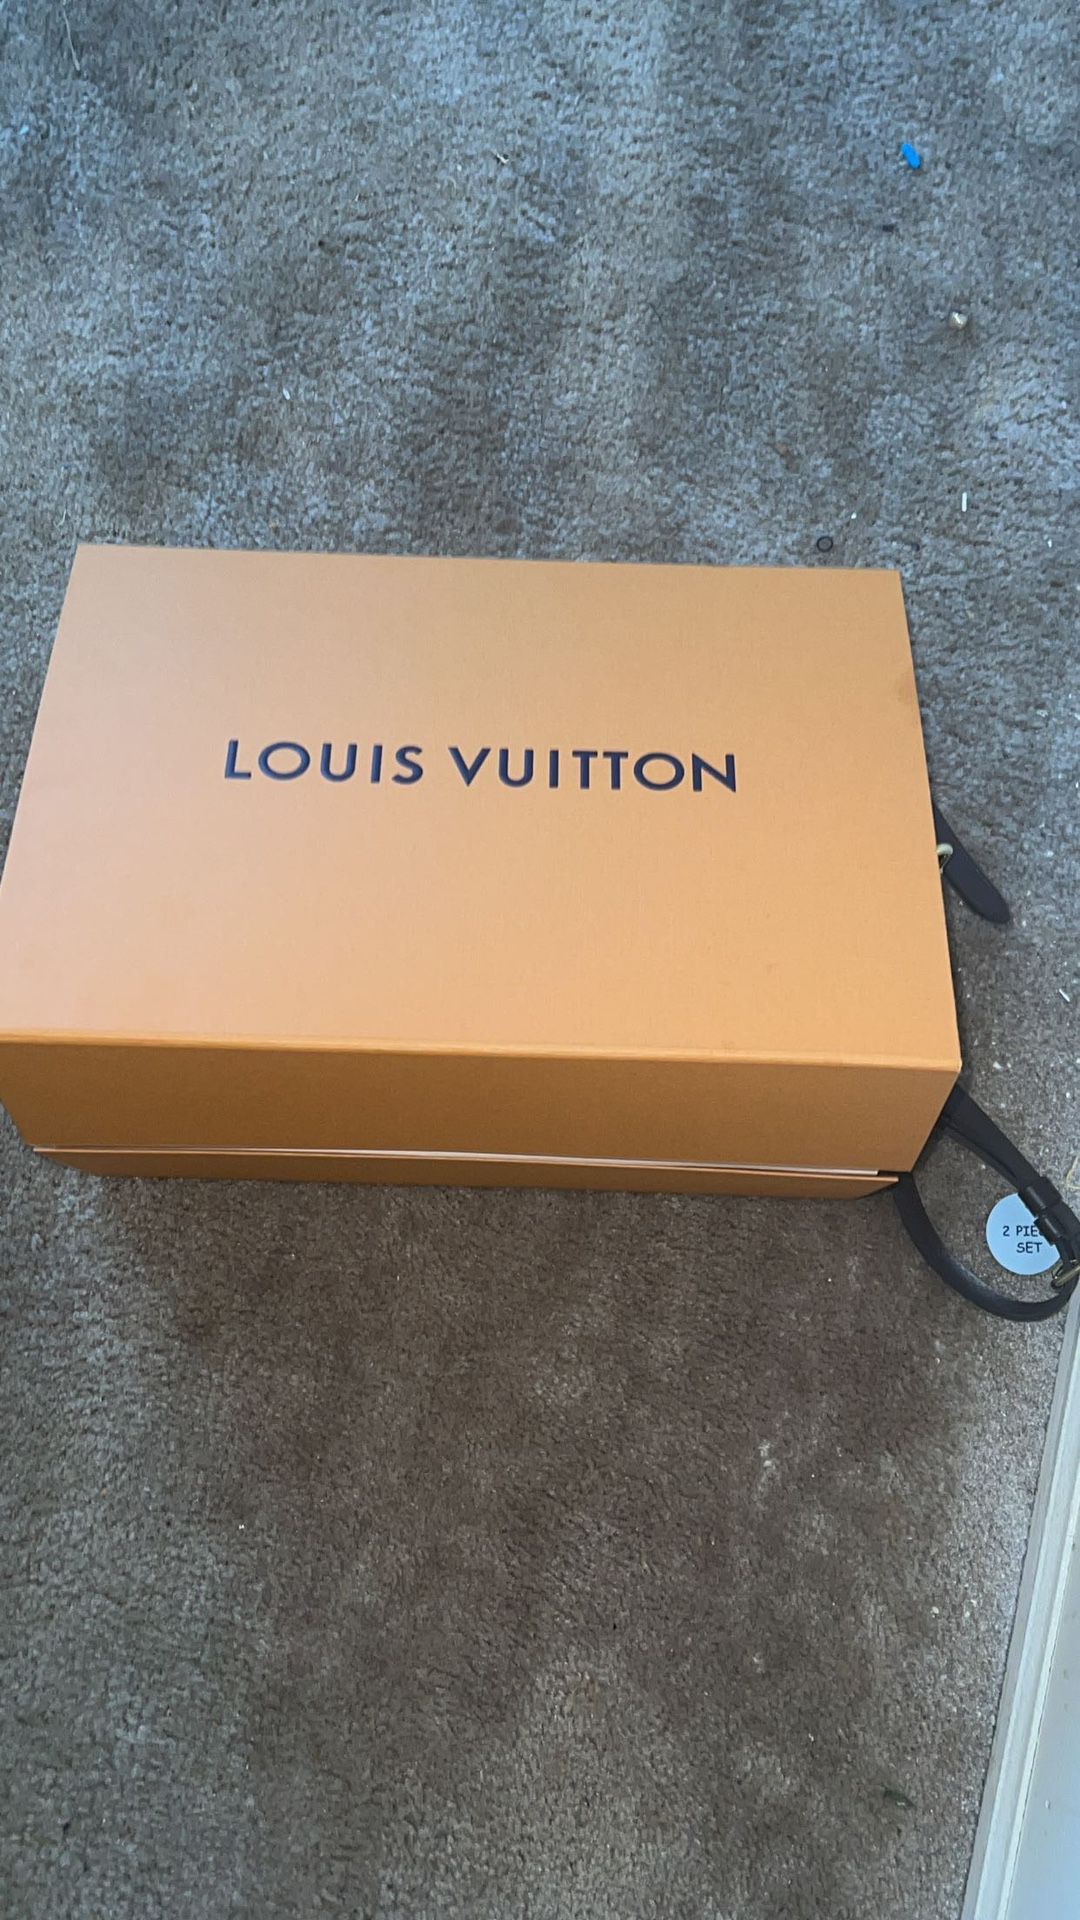 Louis Vuitton Purse for Sale in Sayreville, NJ - OfferUp